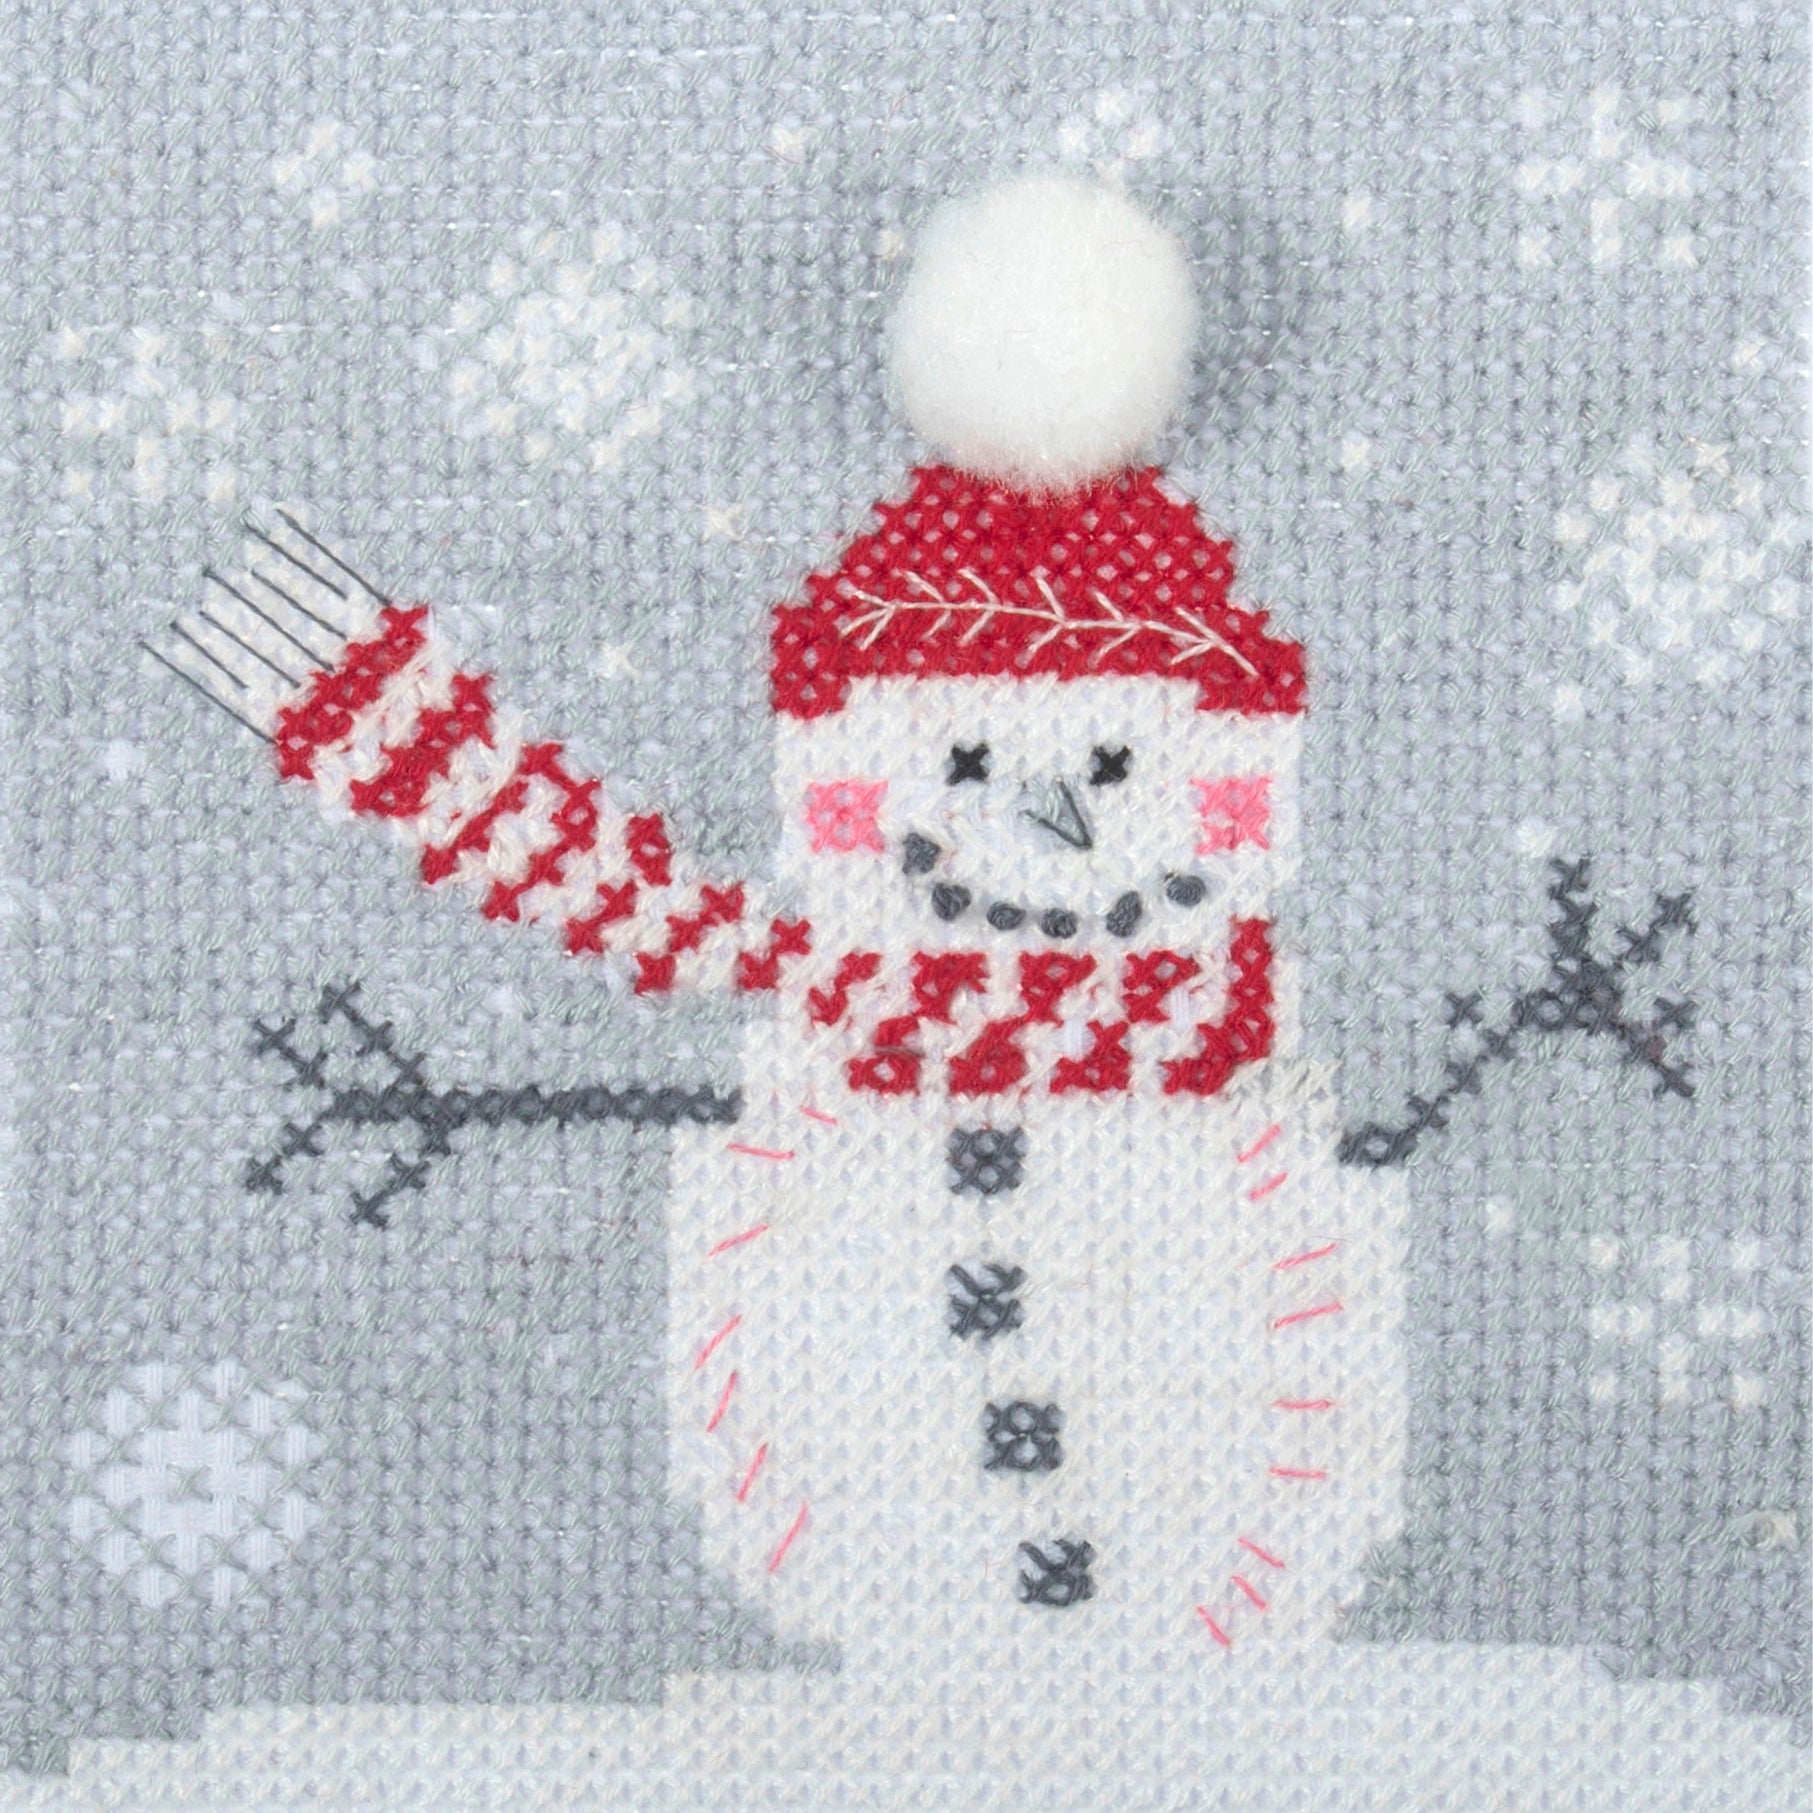 Trimits Cross Stitch Kit - Snowman